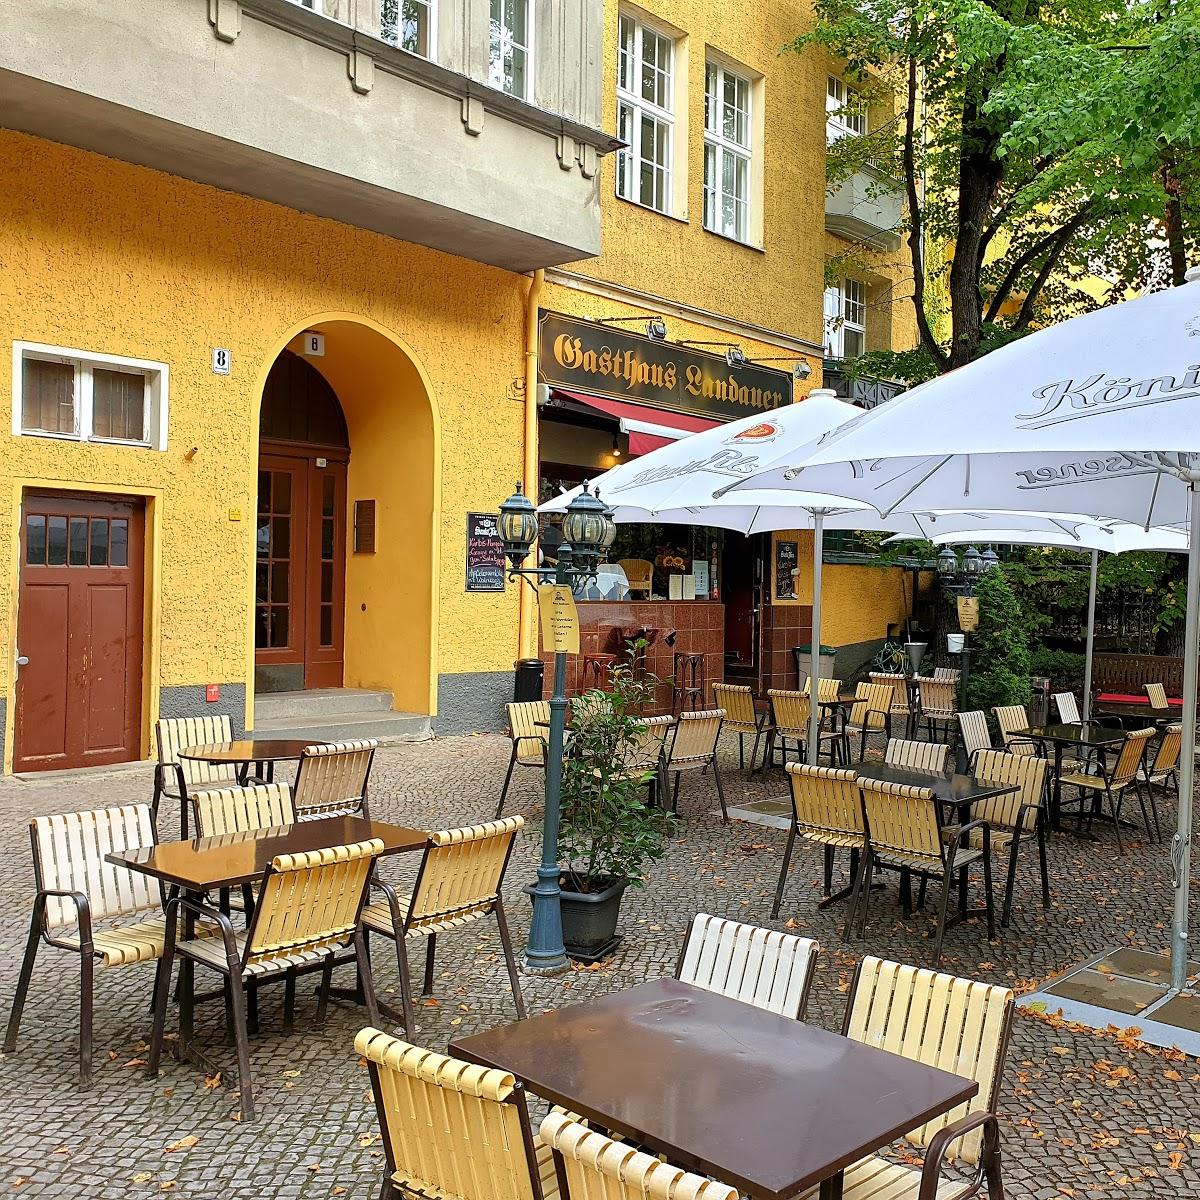 Restaurant "Restaurant Serrano" in  Berlin